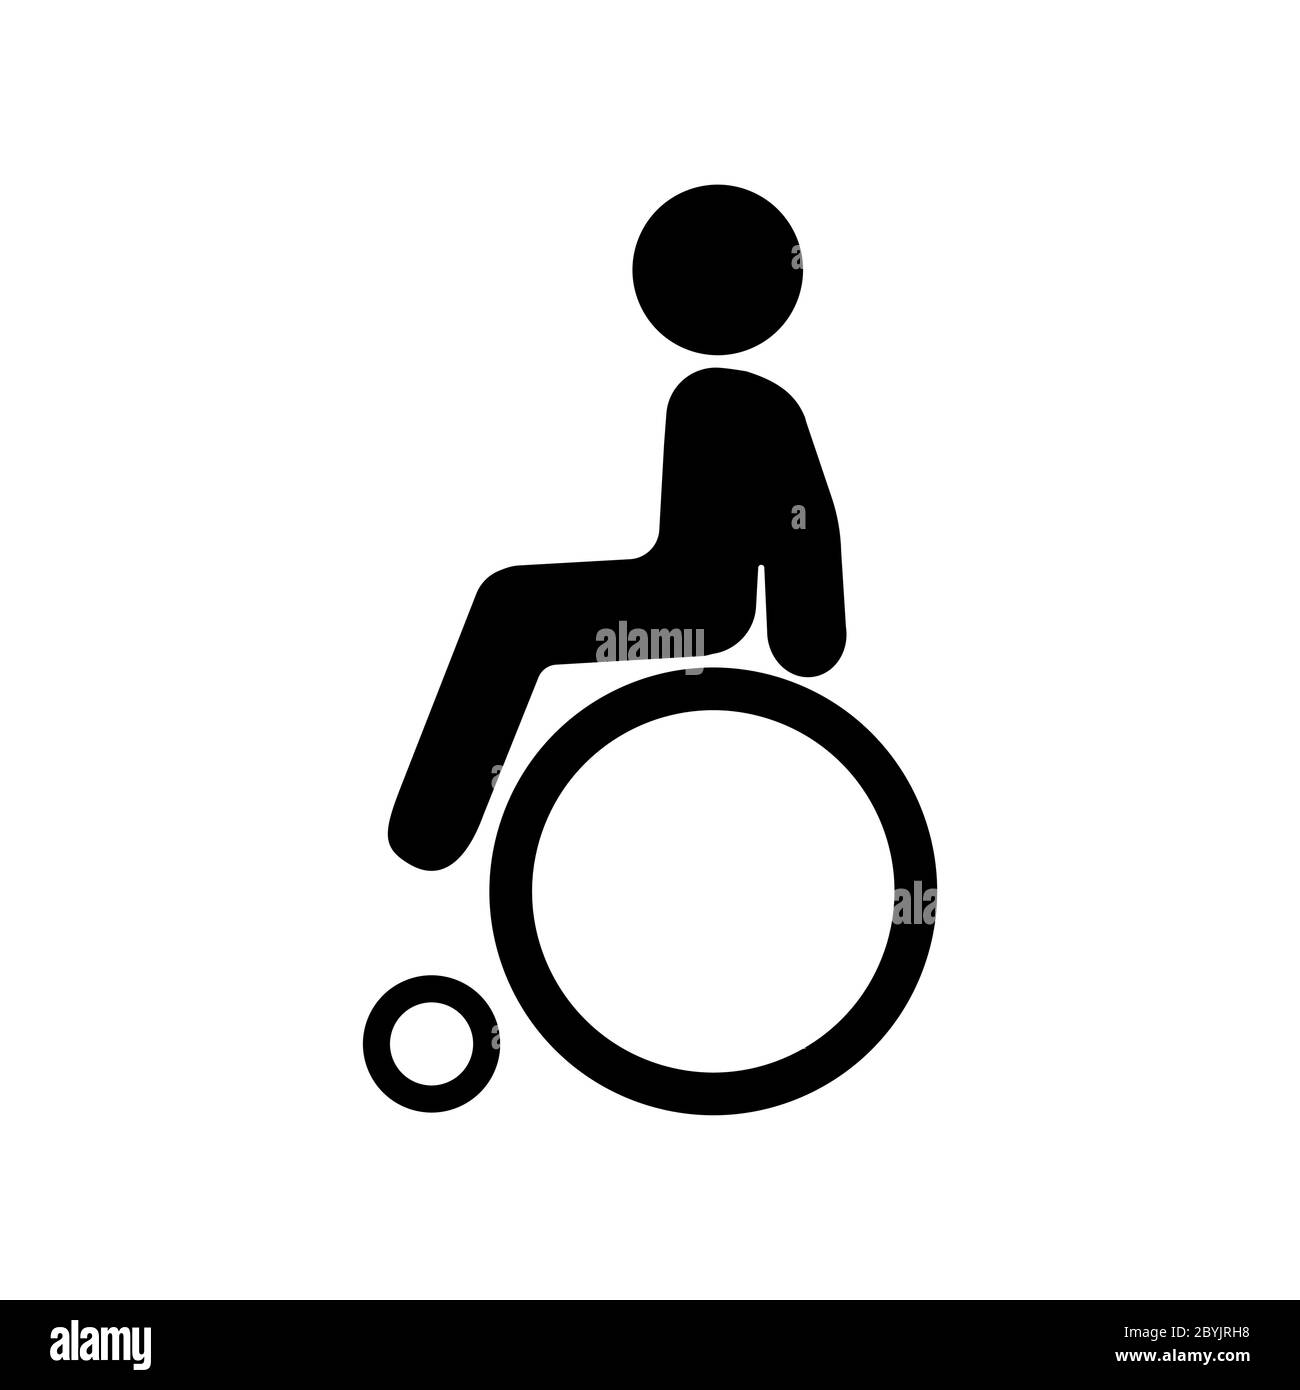 Homme handicapé, invalide ou icône de promenade en noir sur un fond blanc isolé. Vecteur EPS 10. Illustration de Vecteur